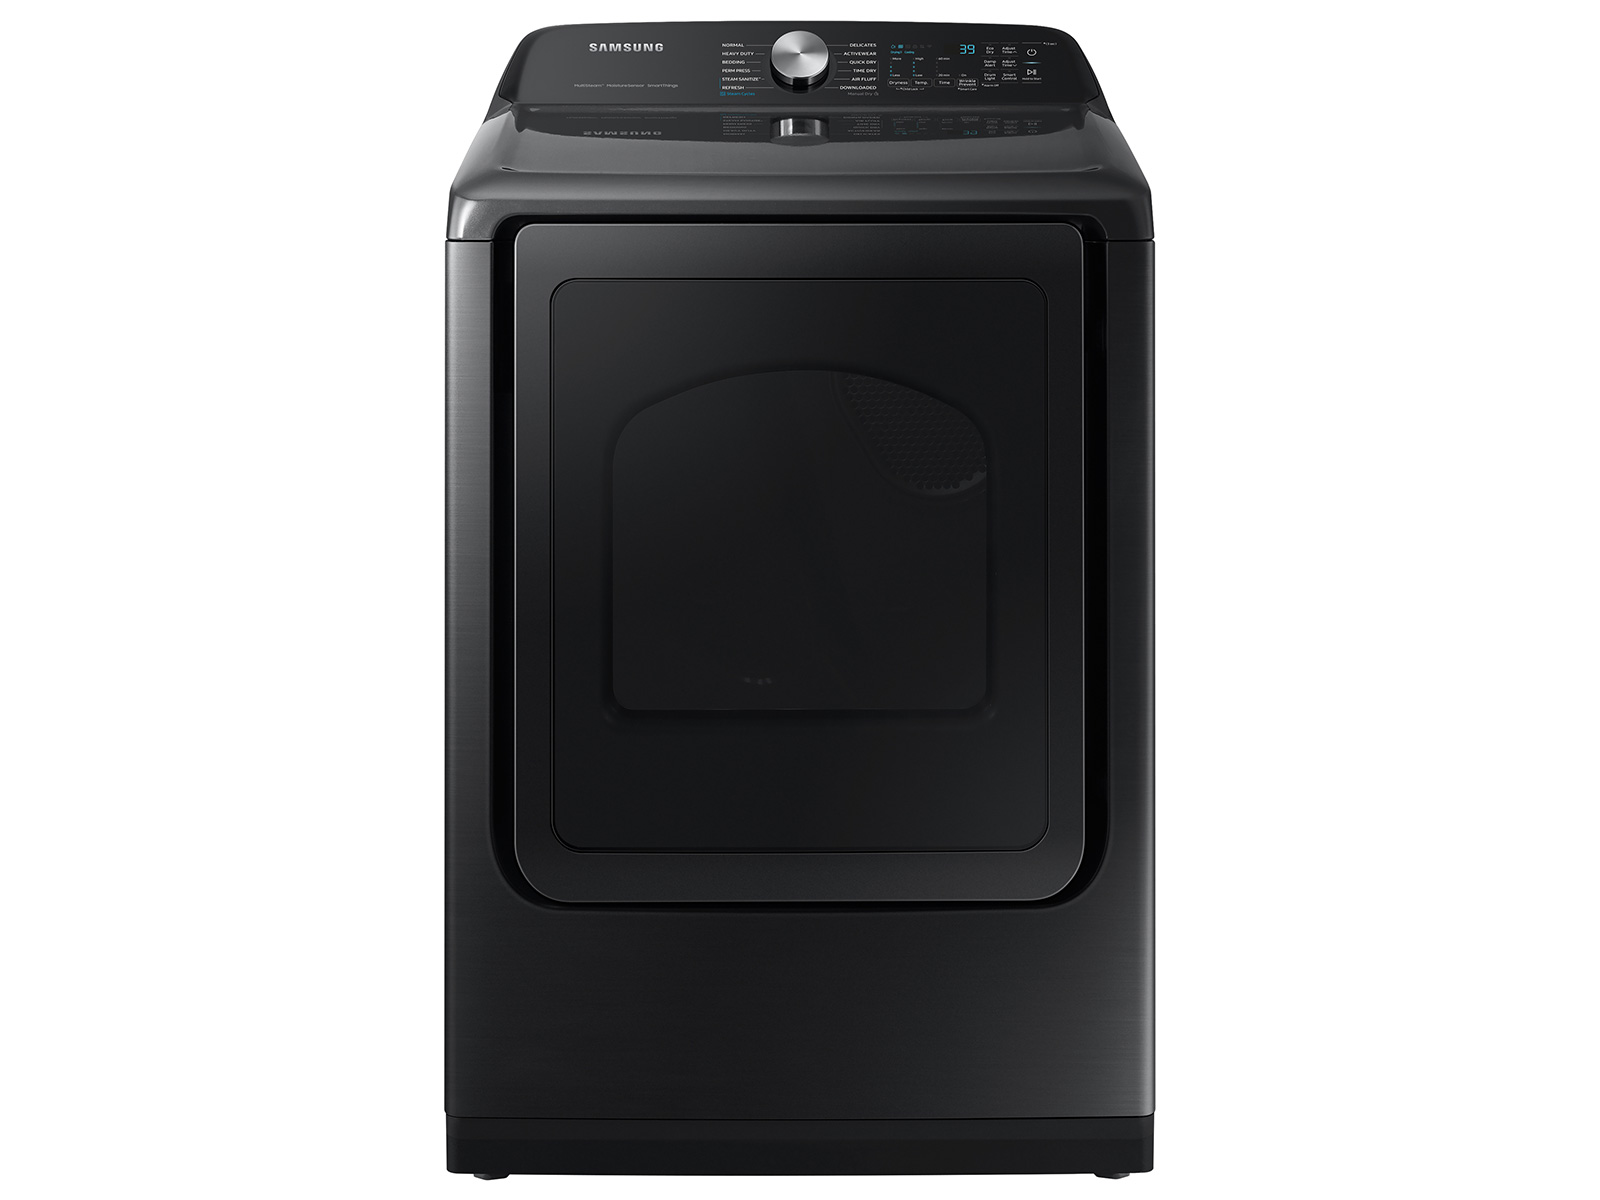 Samsung 7.4 cu. ft. Smart Electric Dryer with Steam Sanitize+ in Brushed Black(DVE52A5500V/A3)